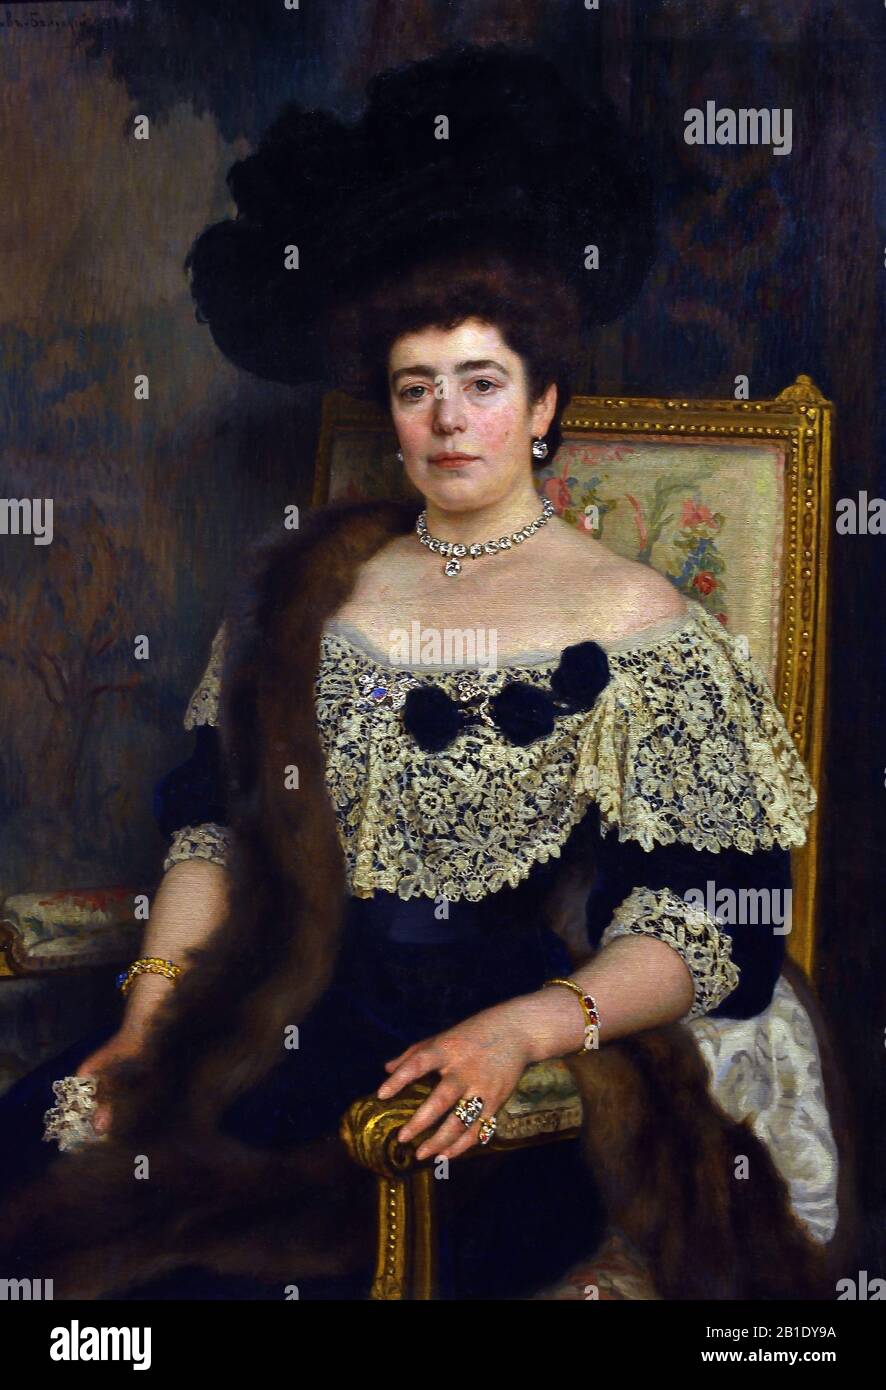 Frau, 1910, von, Nikolay Petrovich Bogdanow-Belsky, zwischen den Jahren von 1865 und 1945, russischer Maler, Russland, Russisch, Föderation, Stockfoto